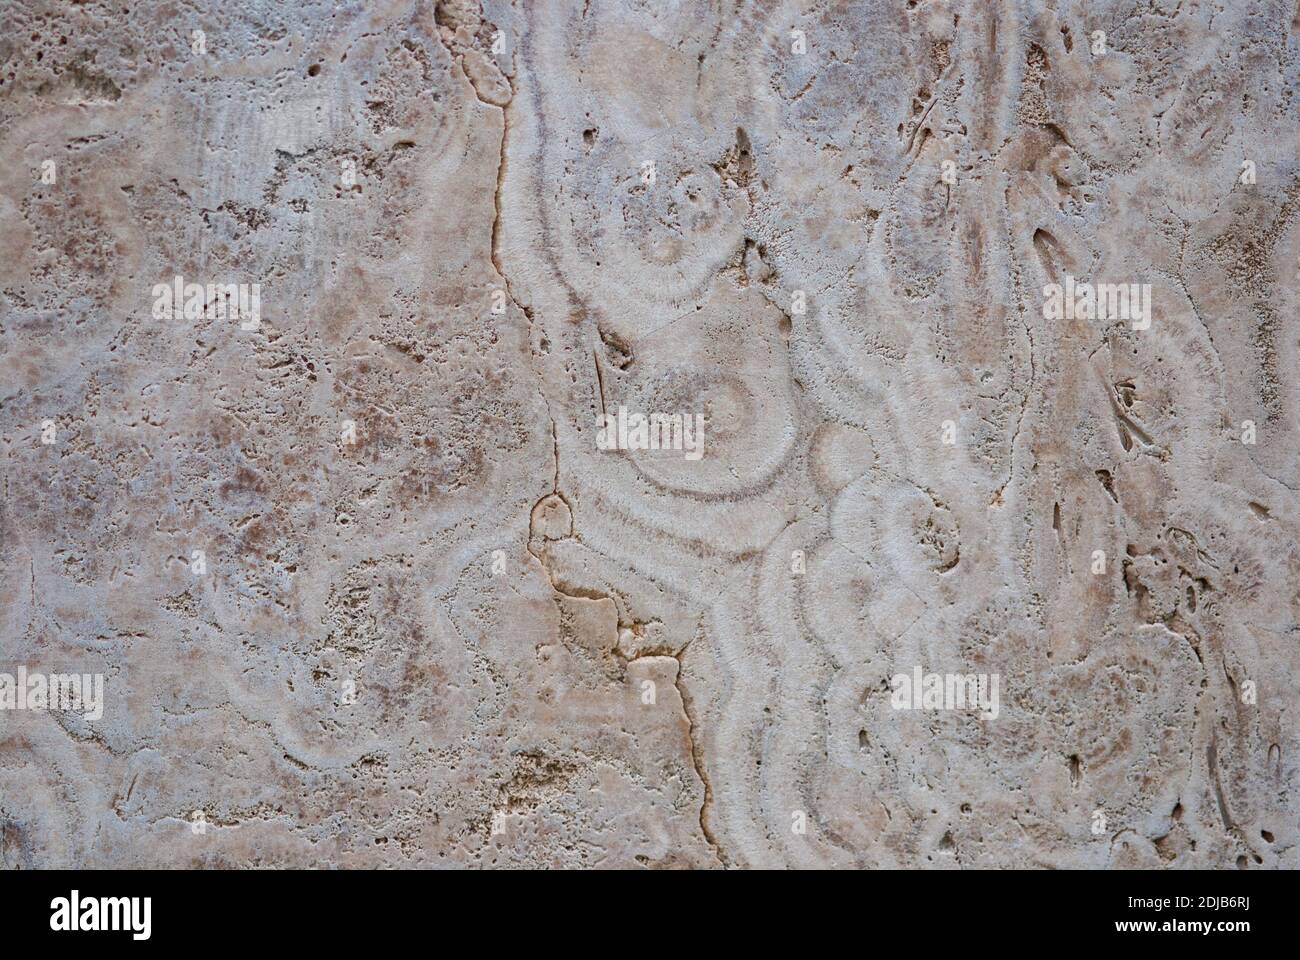 Limestome naturel d'eau douce (marbre italien, tufa calc, travertin) structure texturée Banque D'Images